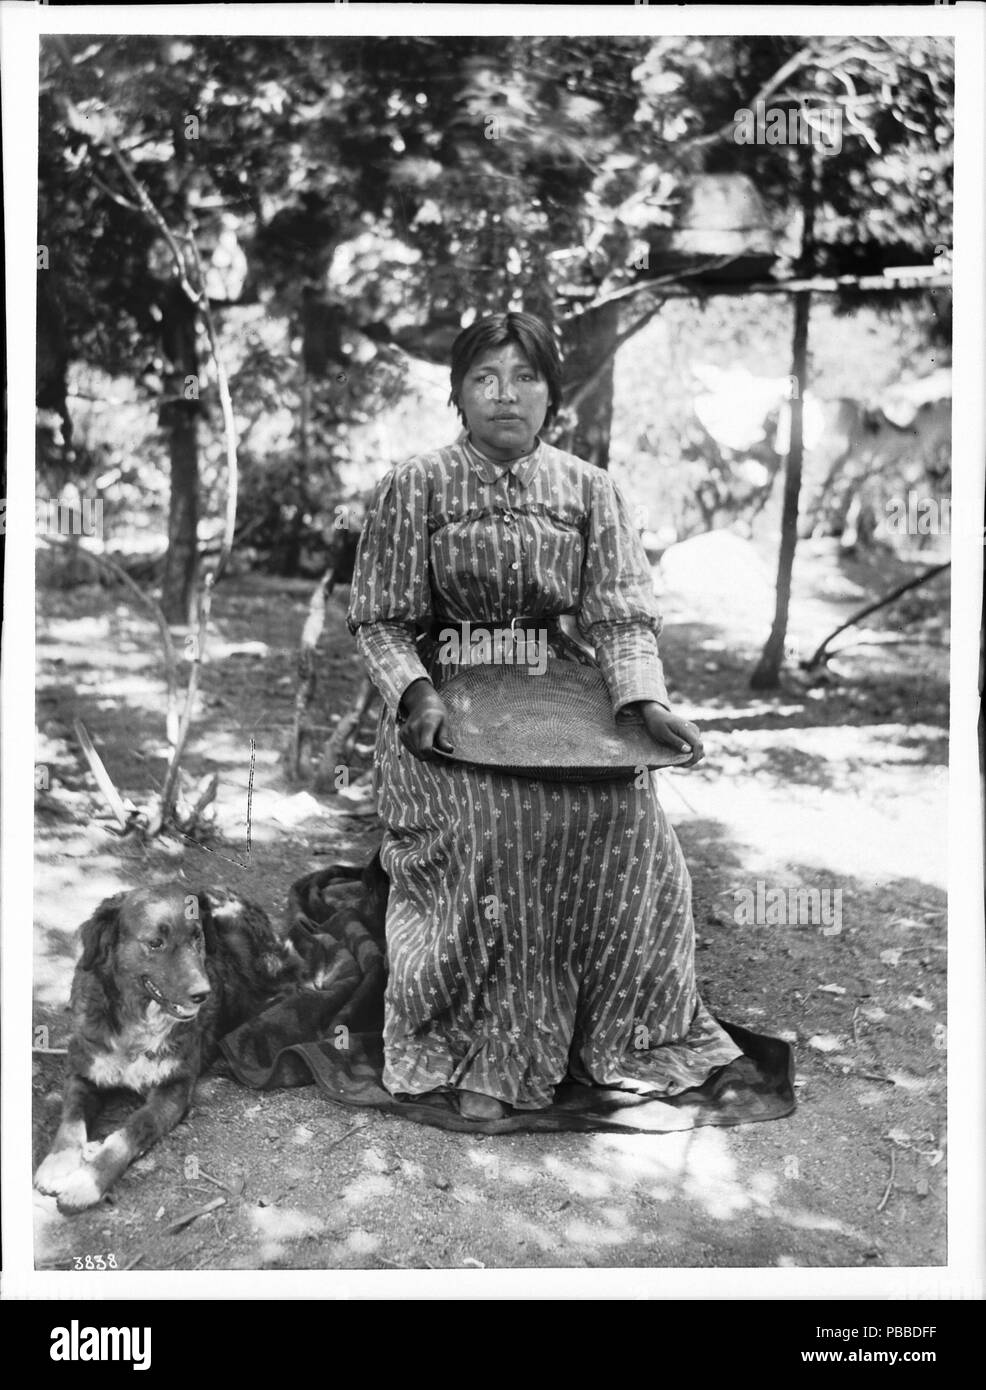 . Englisch: Paiute indische Frau korbmacher von Yosemite Valley, Ca. 1900 Foto der Paiute indische Frau korbmacher von Yosemite Valley, Ca. 1900. Sie sitzt auf einem Stuhl oder Hocker mit einem großen flachen Korb in ihrem Schoß. Sie ist in einem langen Kleid mit einem Riemen gekleidet. Ein Hund sitzt auf dem Boden neben ihr auf der linken Seite. Die Gegend ist mit Schatten von den Bäumen hinter ihr gesprenkelt. Rufnummer: CHS-3838 Fotograf: Pierce, C.C. (Charles C.), 1861-1946 Dateiname: CHS-3838 Abdeckung Datum: ca. 1900 Teil der Sammlung: California Historical Society Collection, 1860-1960 Format: Glasplatte Stockfoto